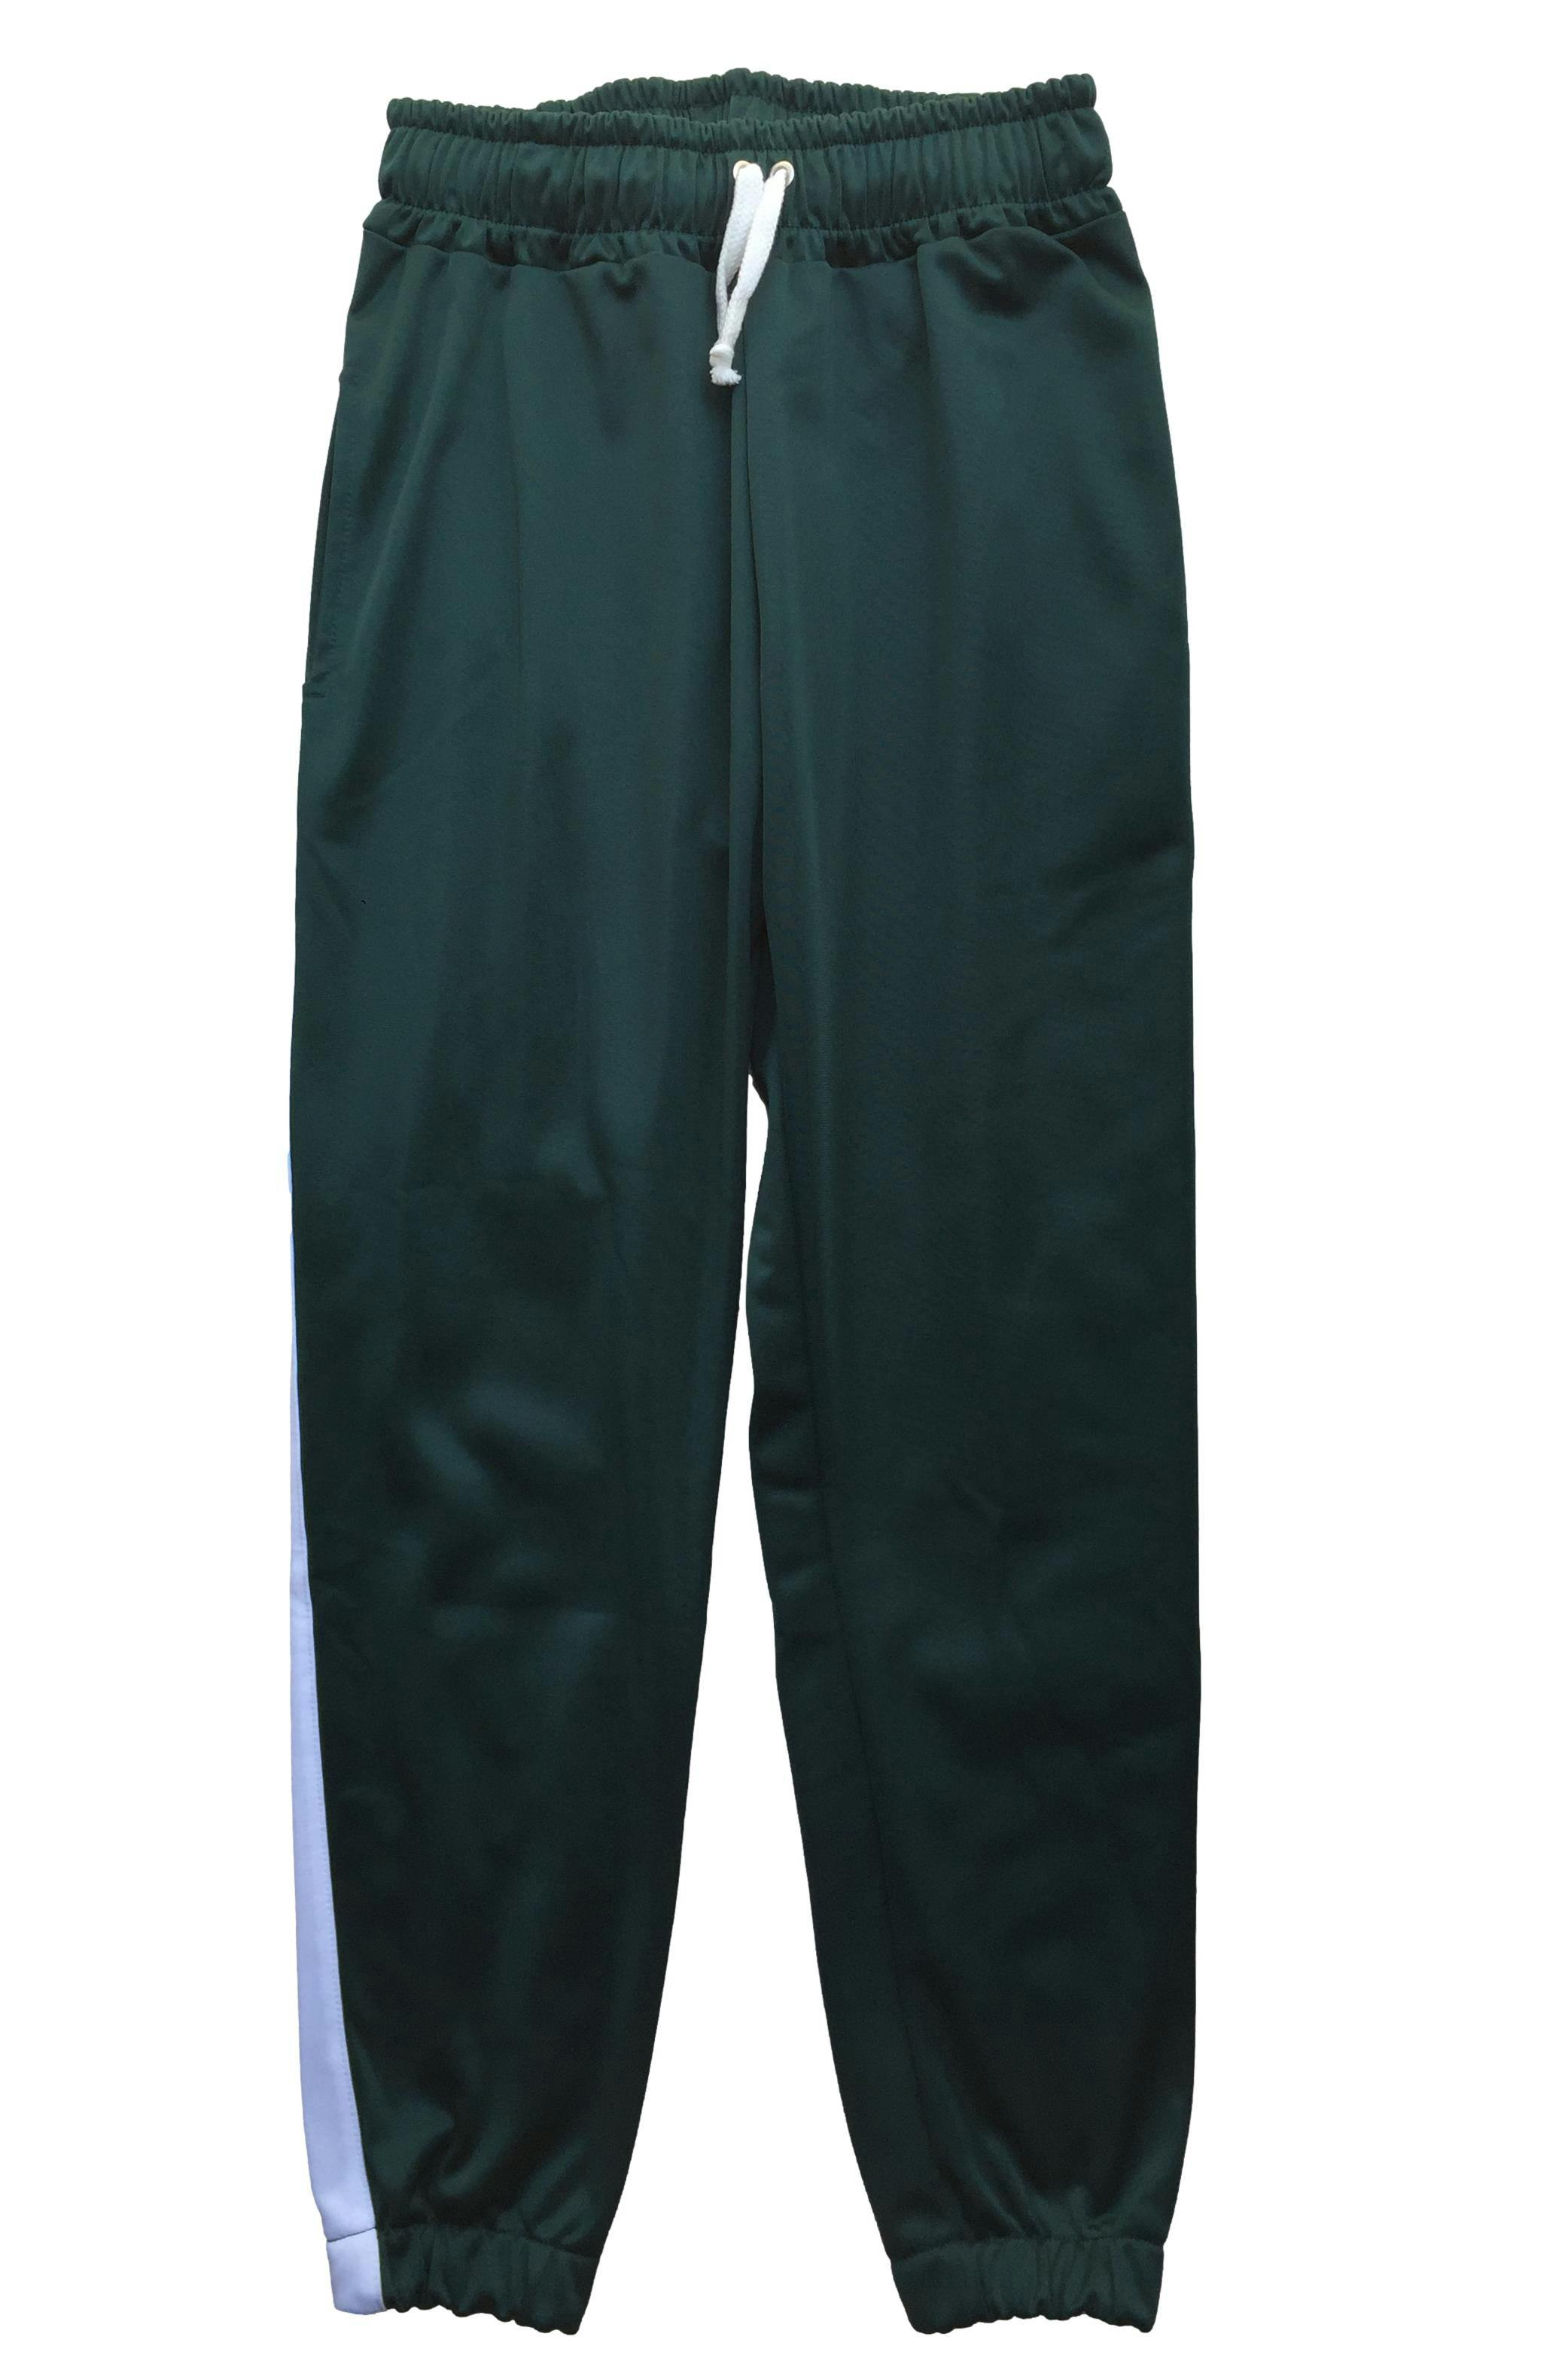 Pantalón tipo buzo jogger verde con franjas blanca en los laterales y bolsillos. Cintura: 60 cm (sin estirar), Largo: 86cm